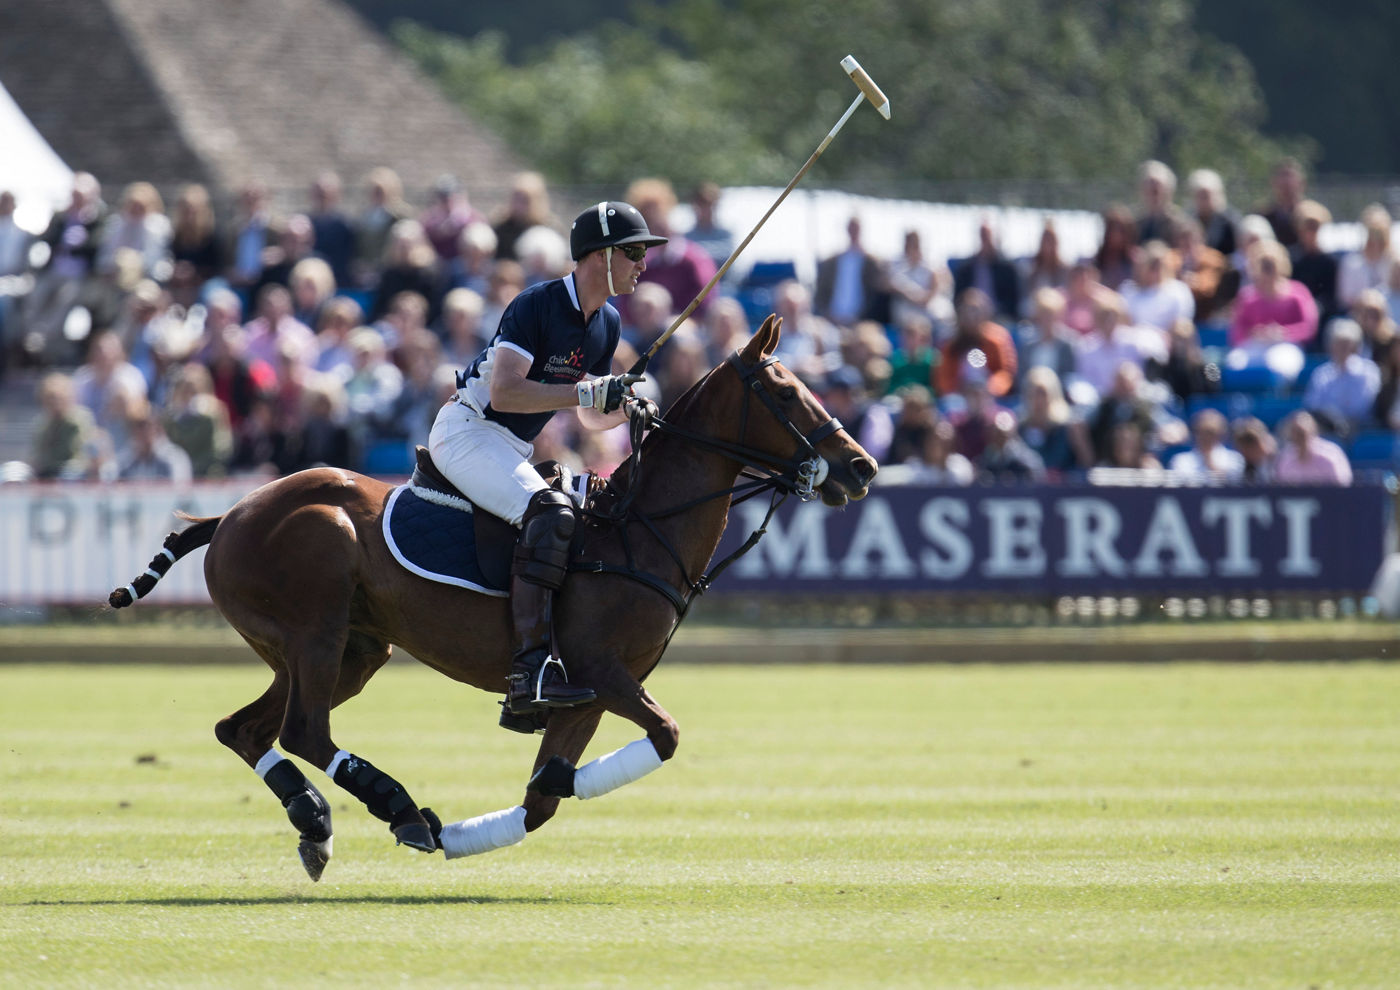 El duque de Cambridge jugando al polo durante partido patrocinado por Maserati